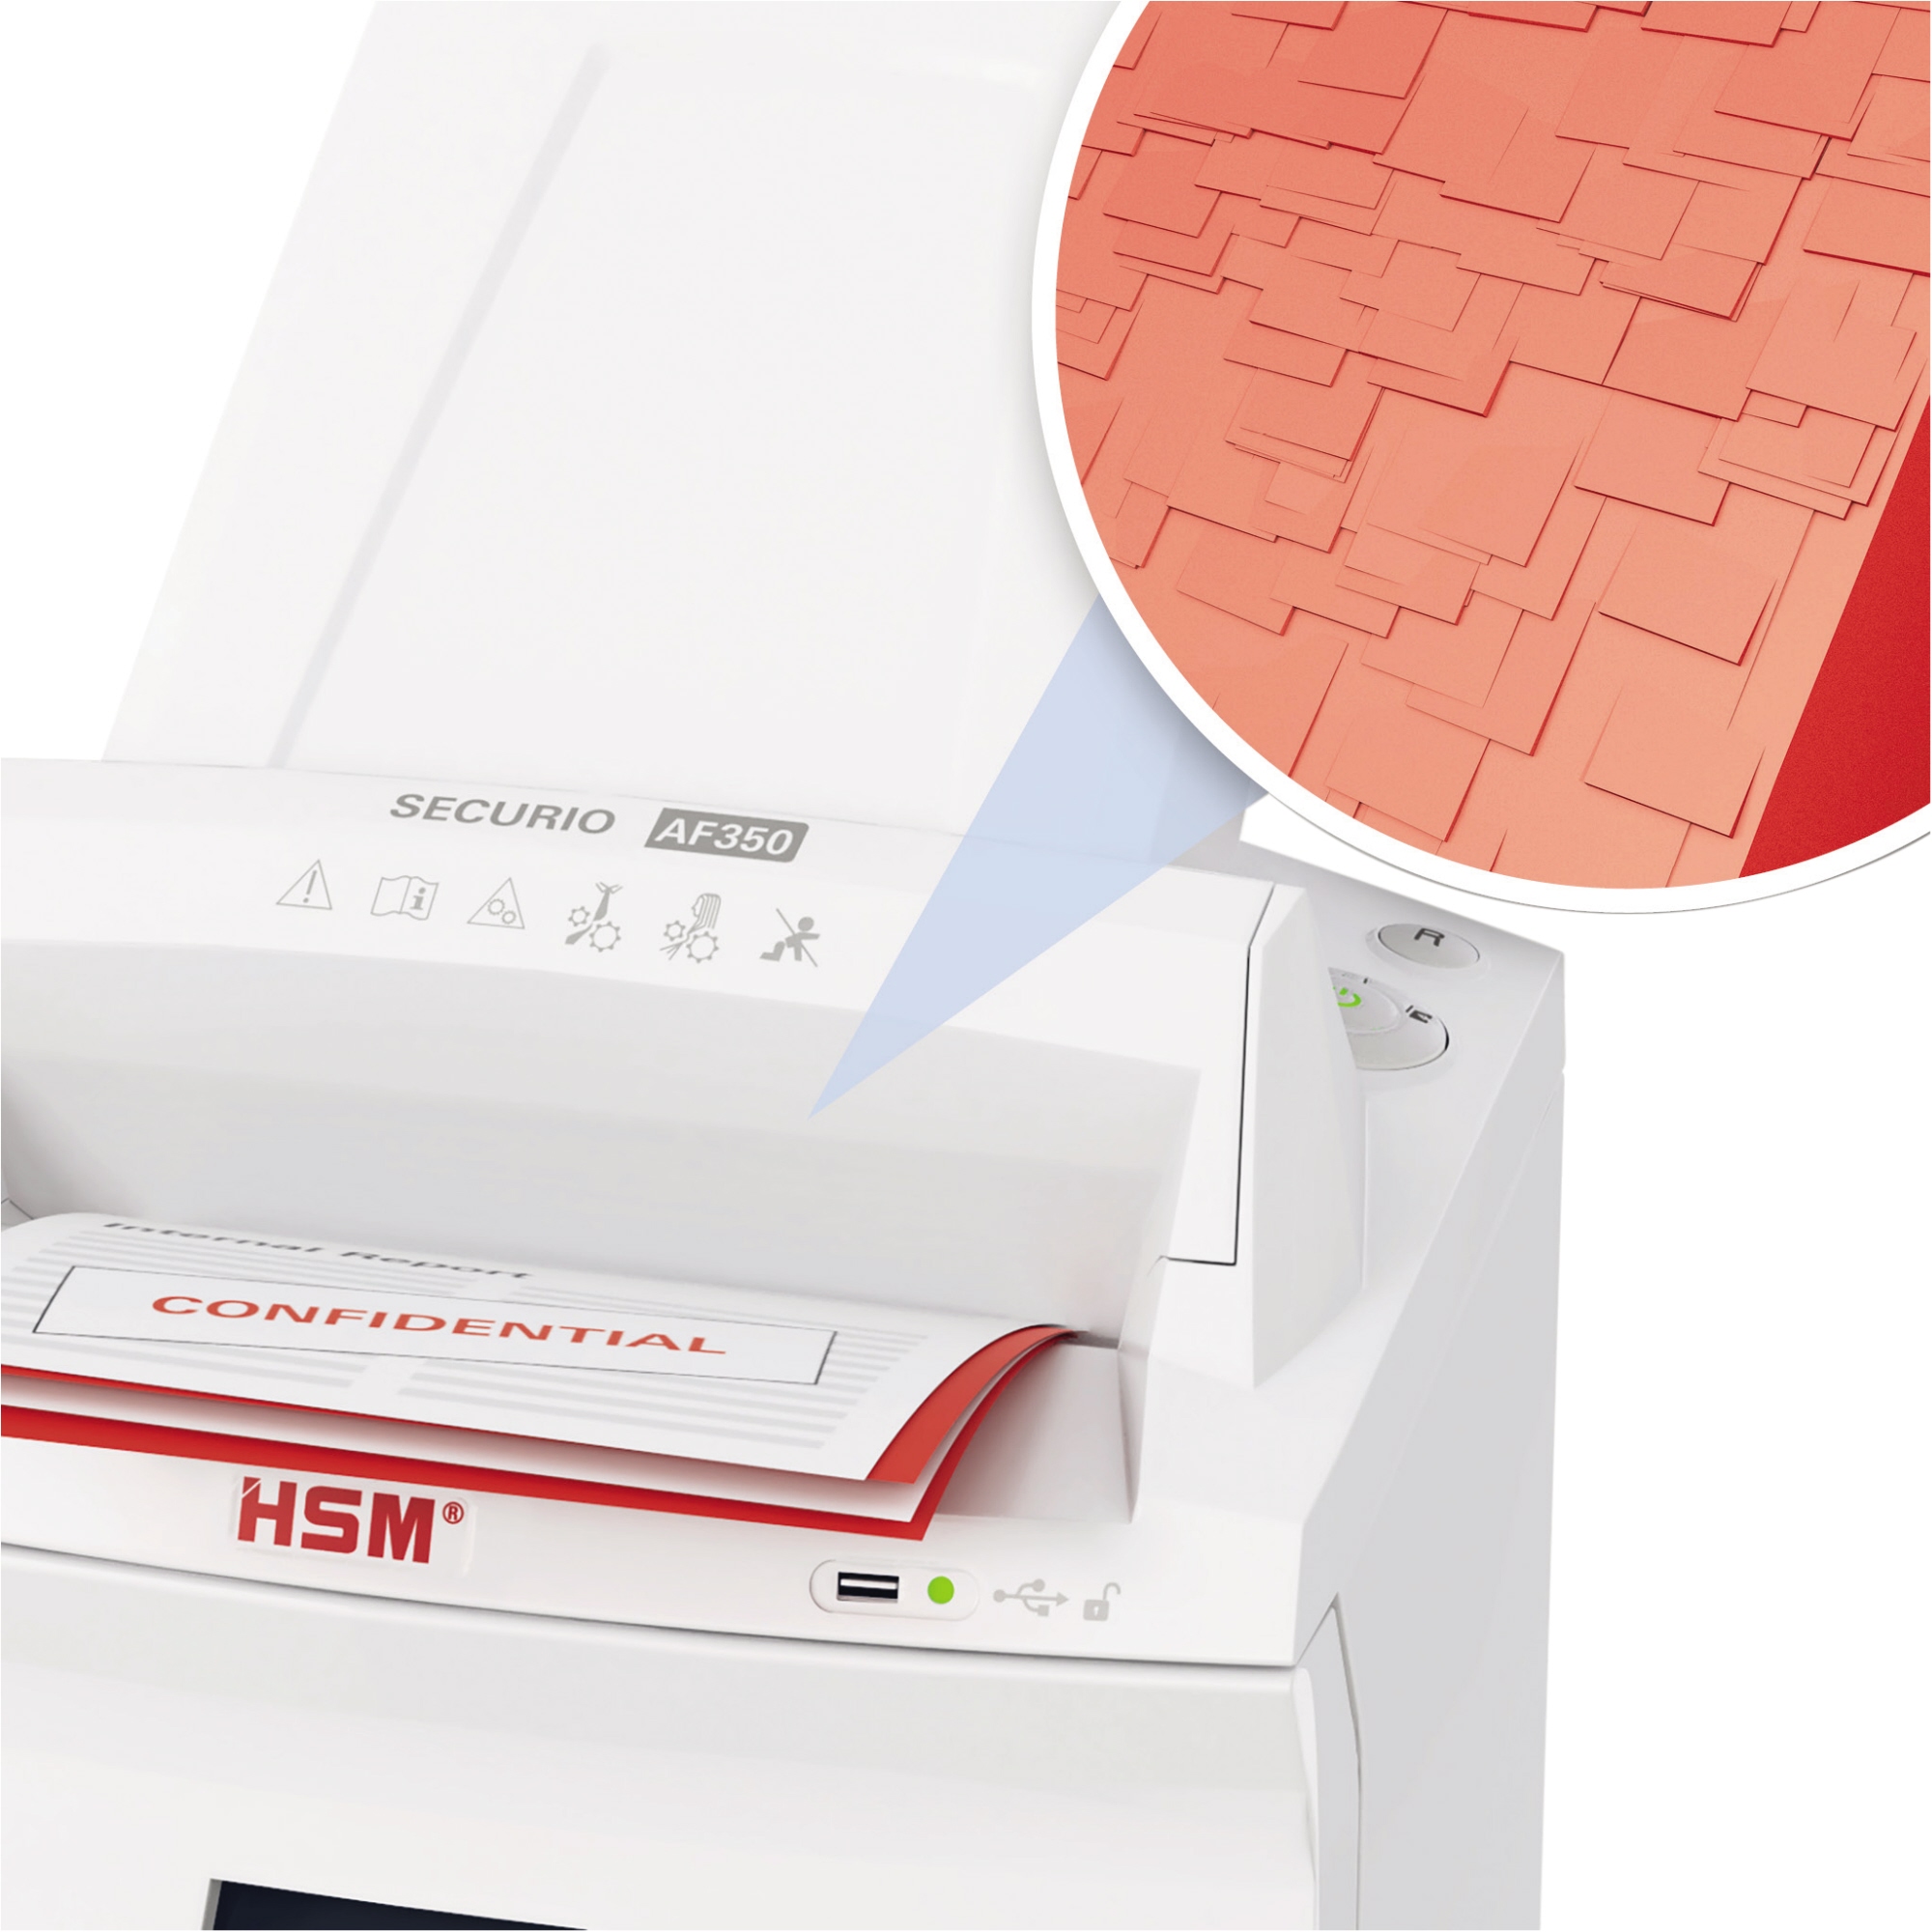 HSM® Aktenvernichter Autofeed AF350 CC 4,5x30mm weiß